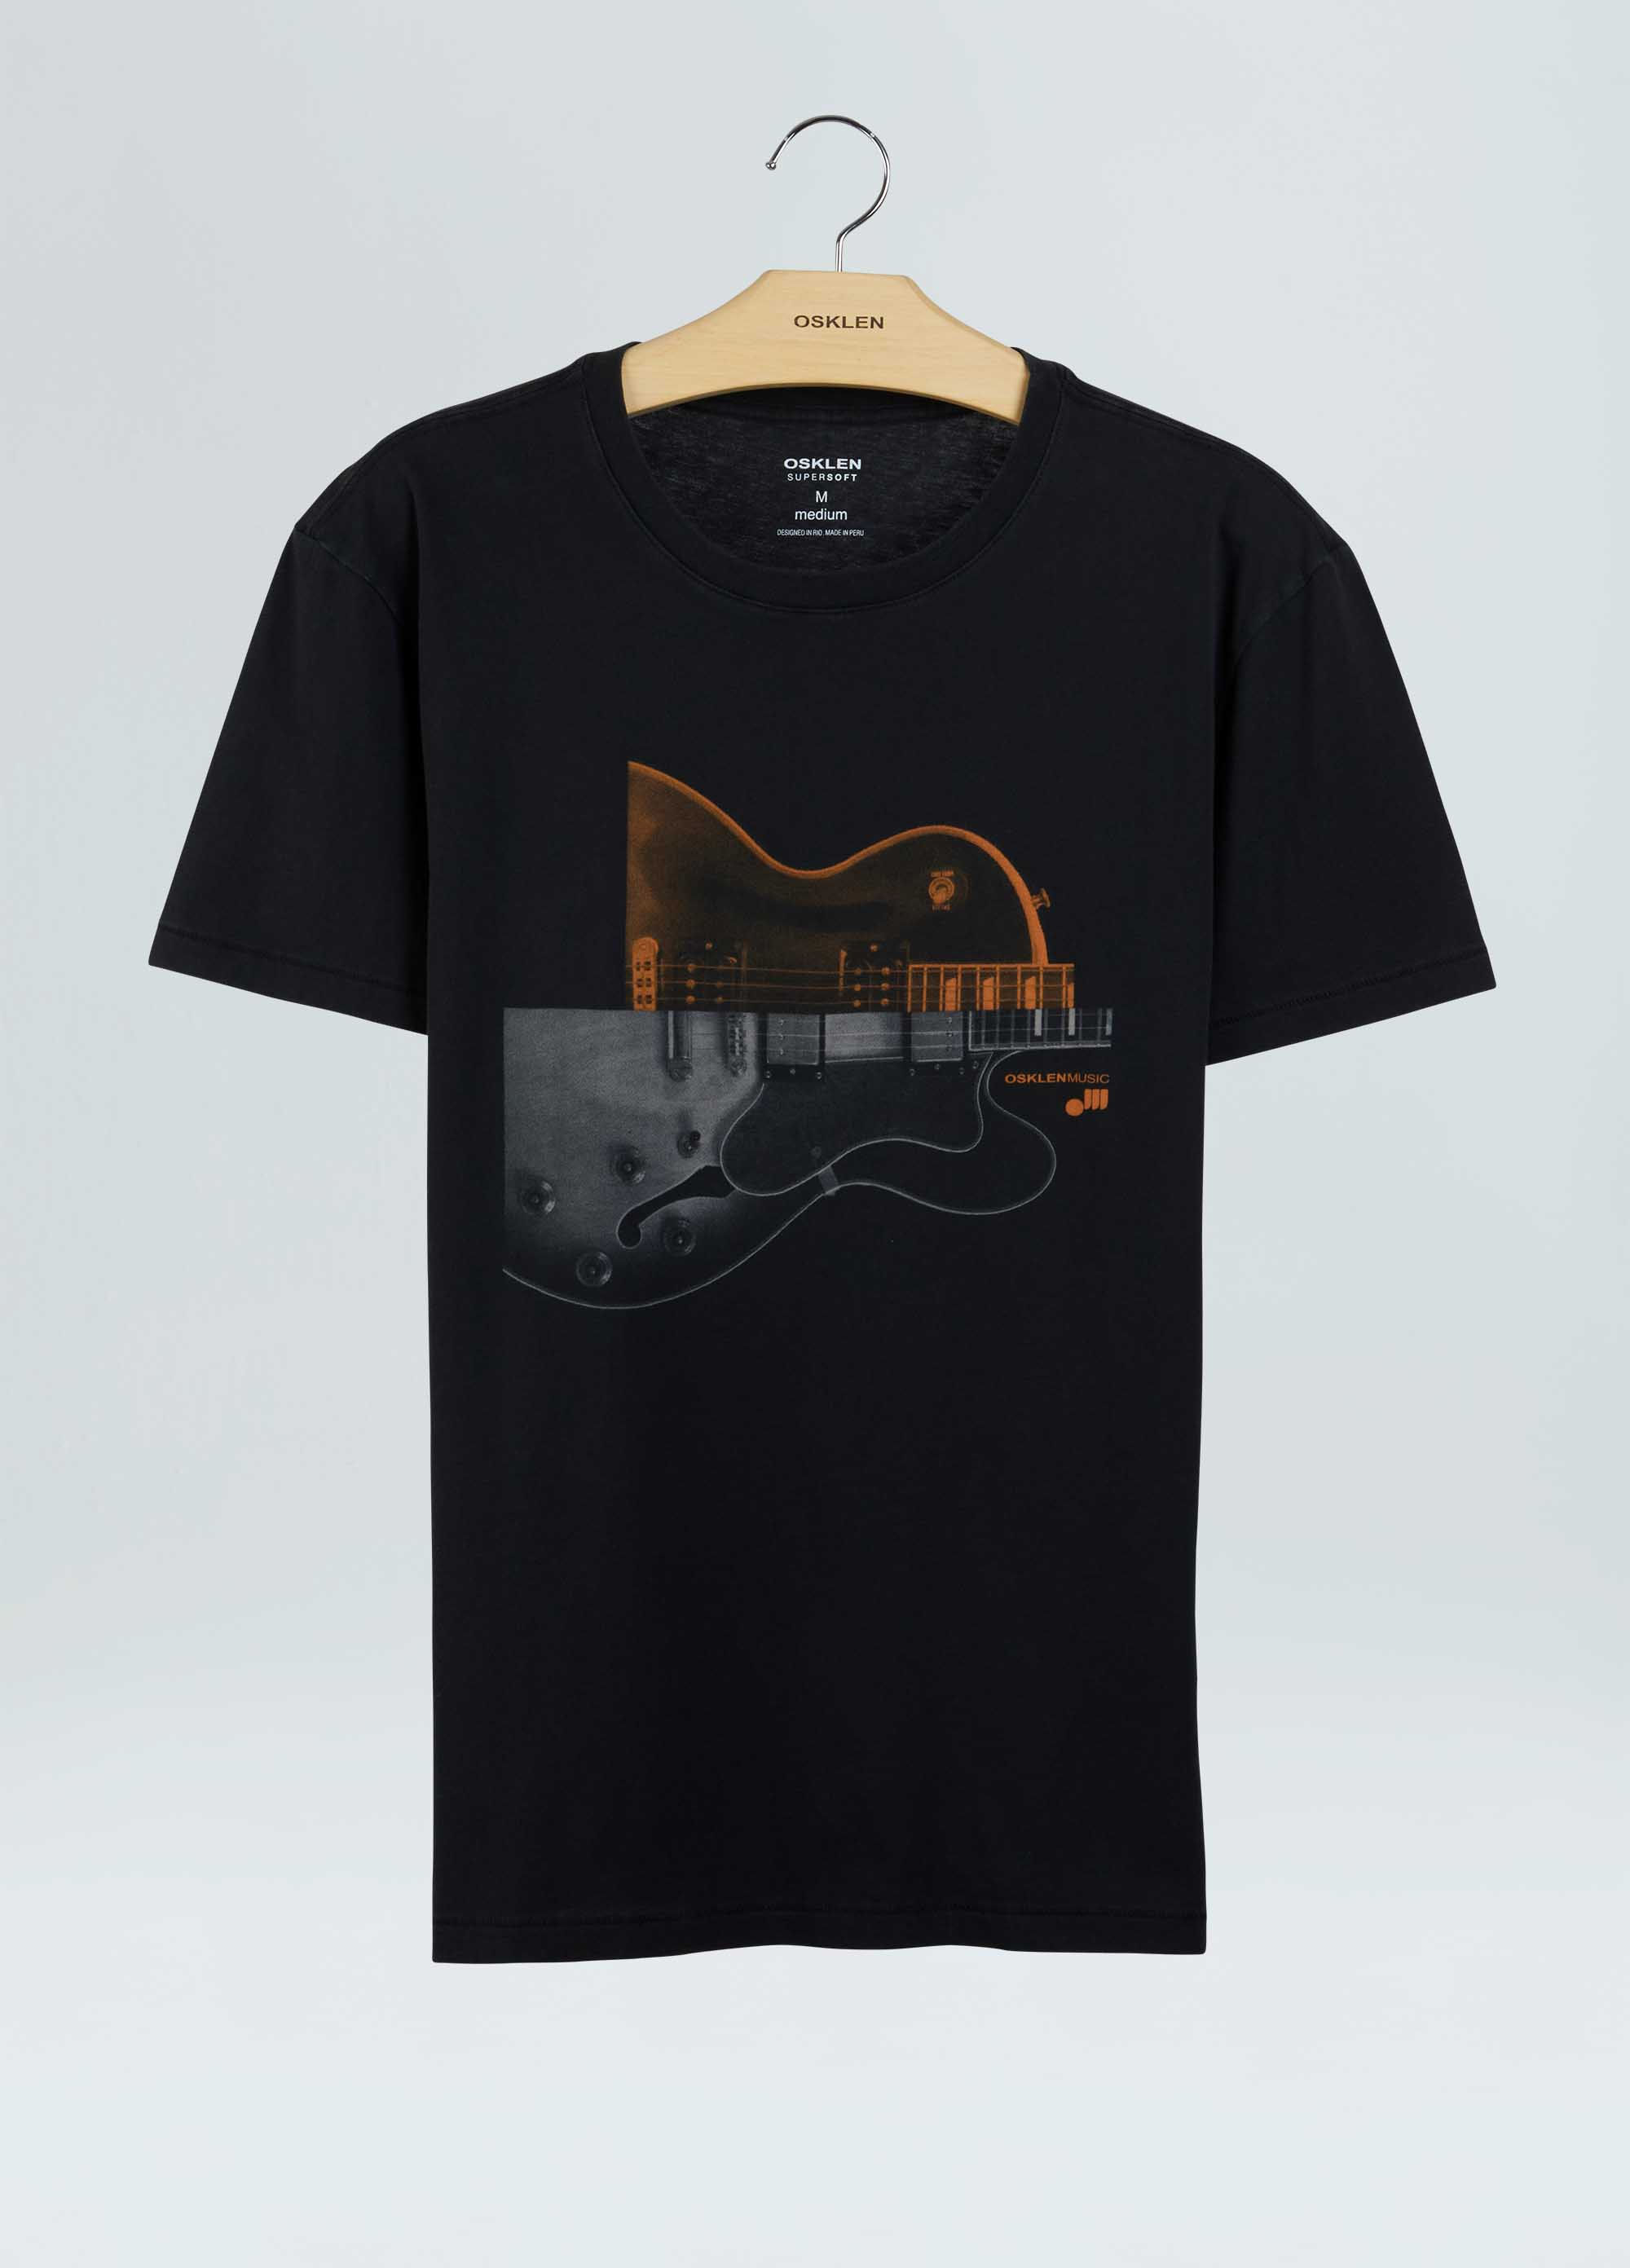 T-shirt soft used guitars